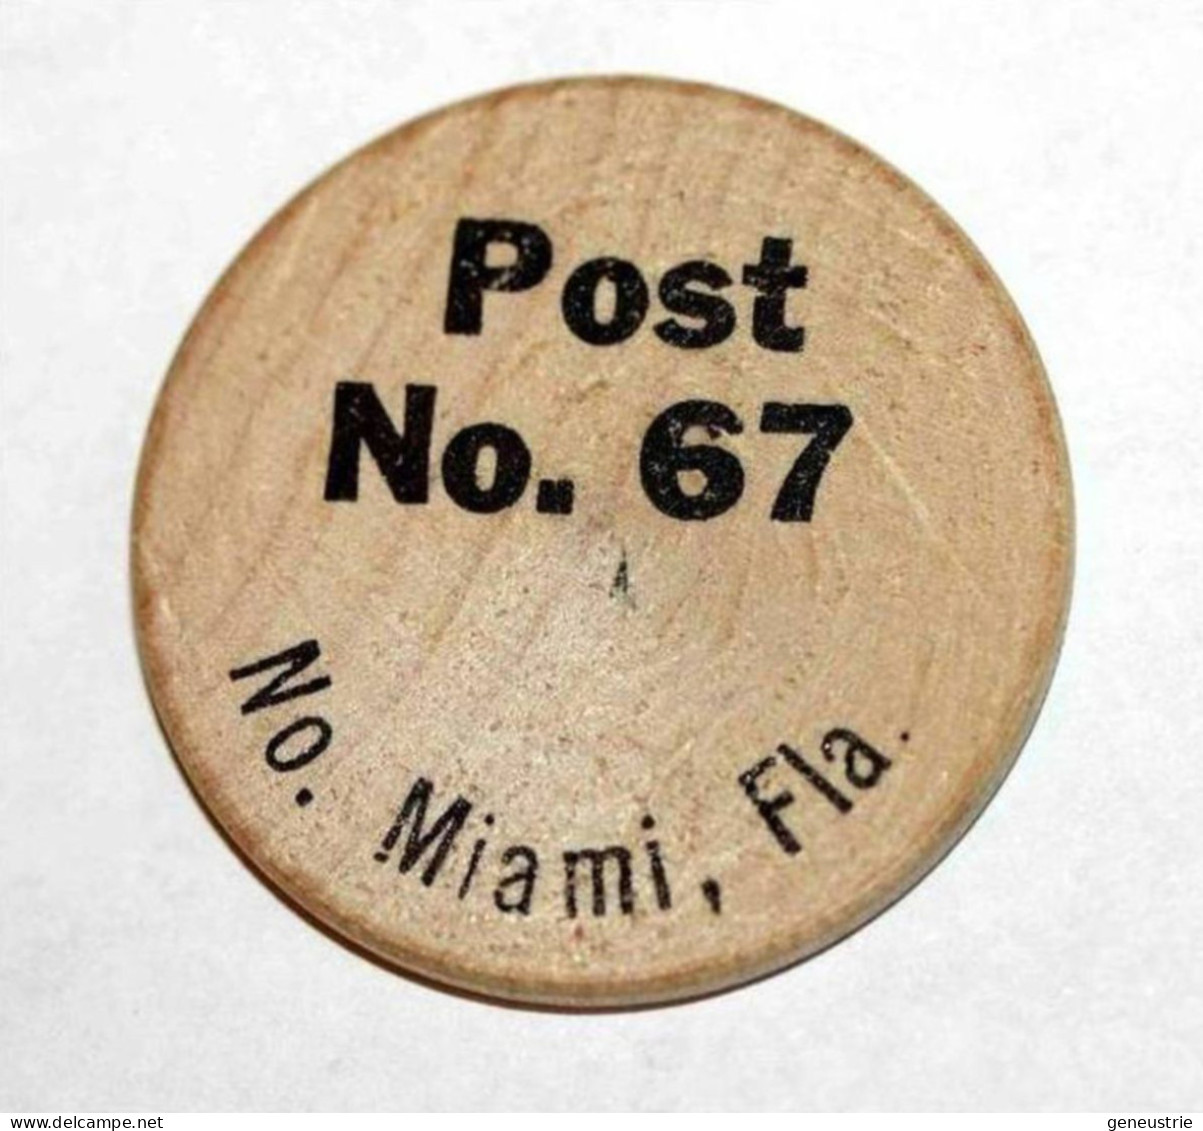 Wooden Token - Wooden Nickel - Jeton Bois Bison Monnaie Nécessité - Miami Floride - Etats-Unis - Monetari/ Di Necessità